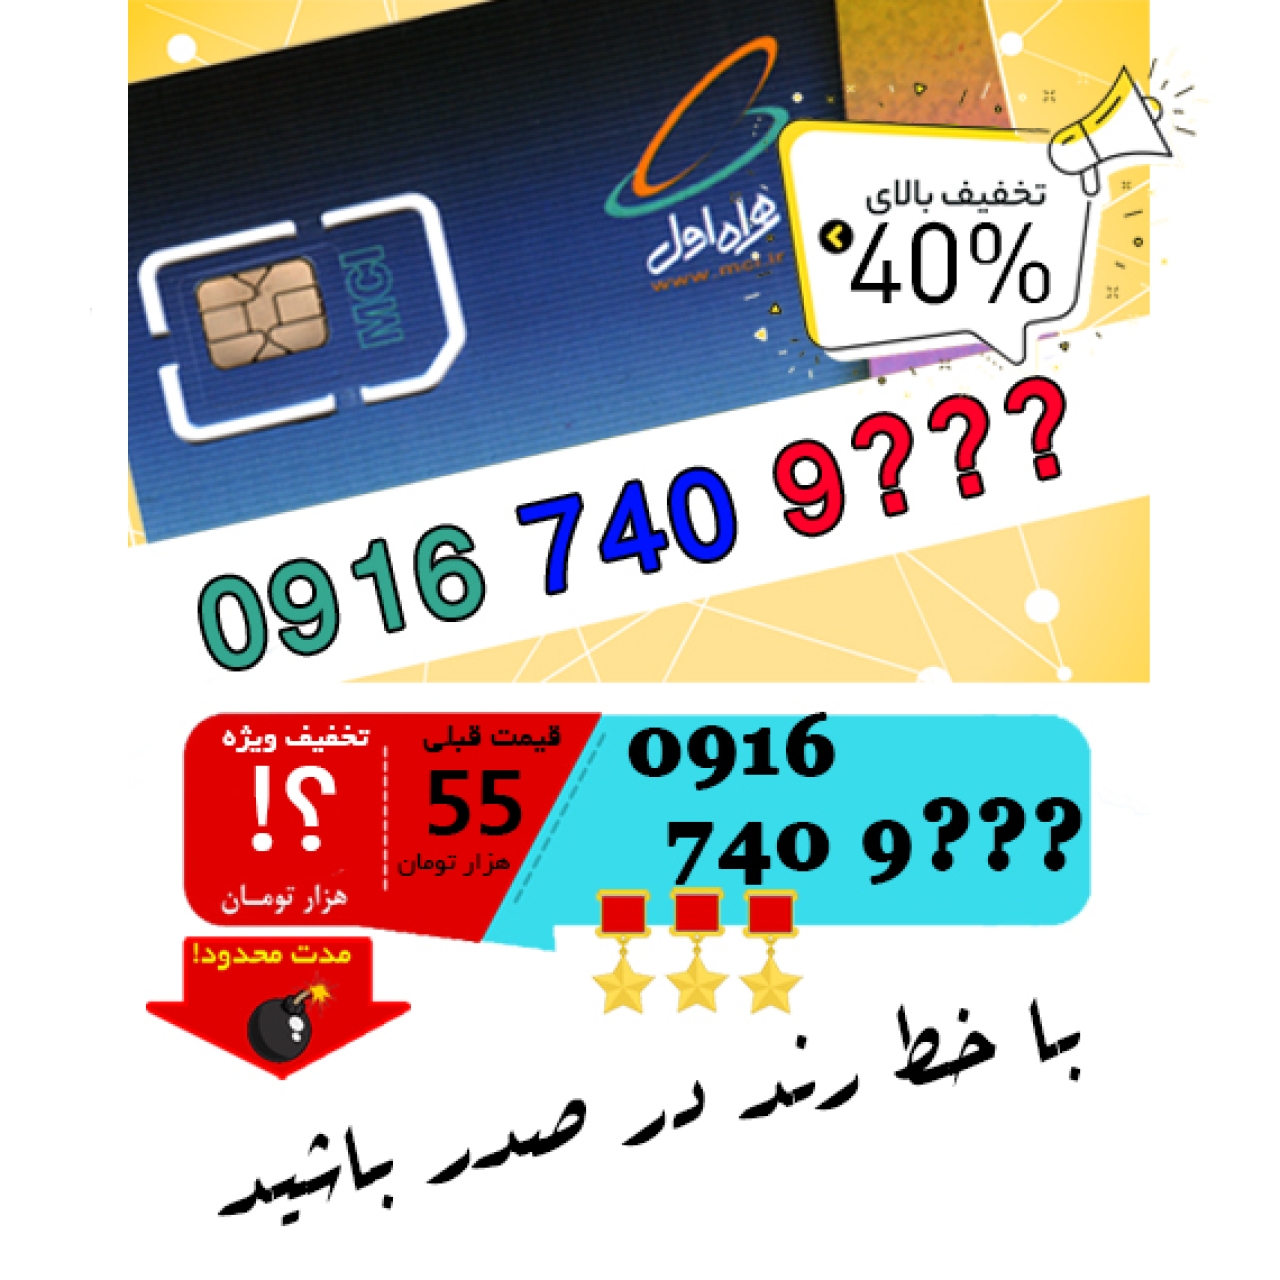 حراج سیم کارت اعتباری همراه اول 09167409